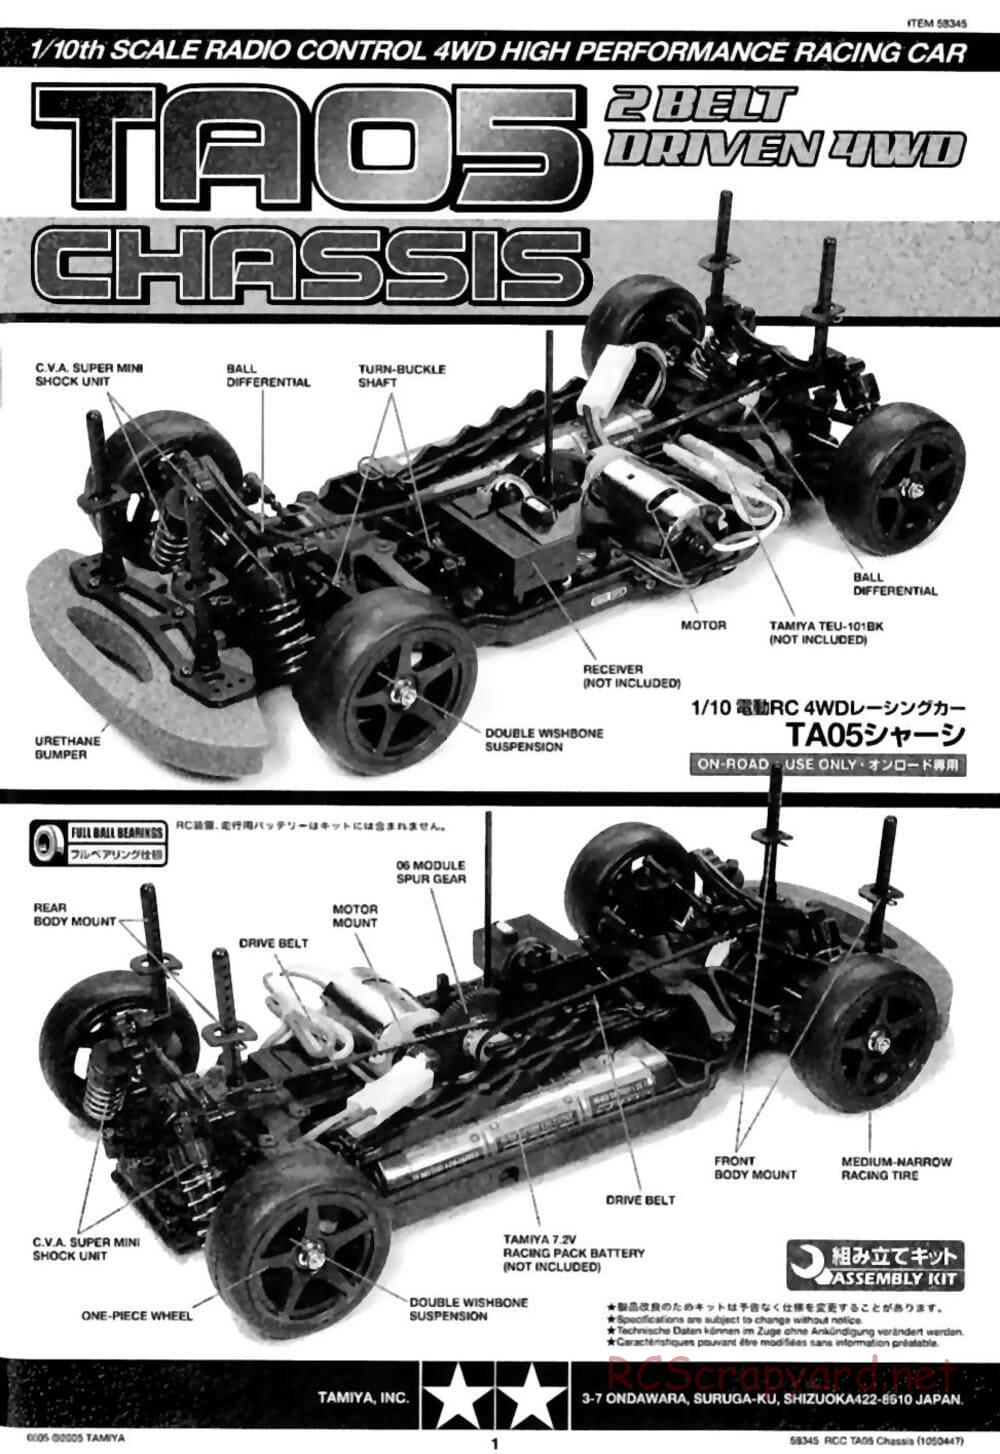 Tamiya - TA05 Chassis - Manual - Page 1